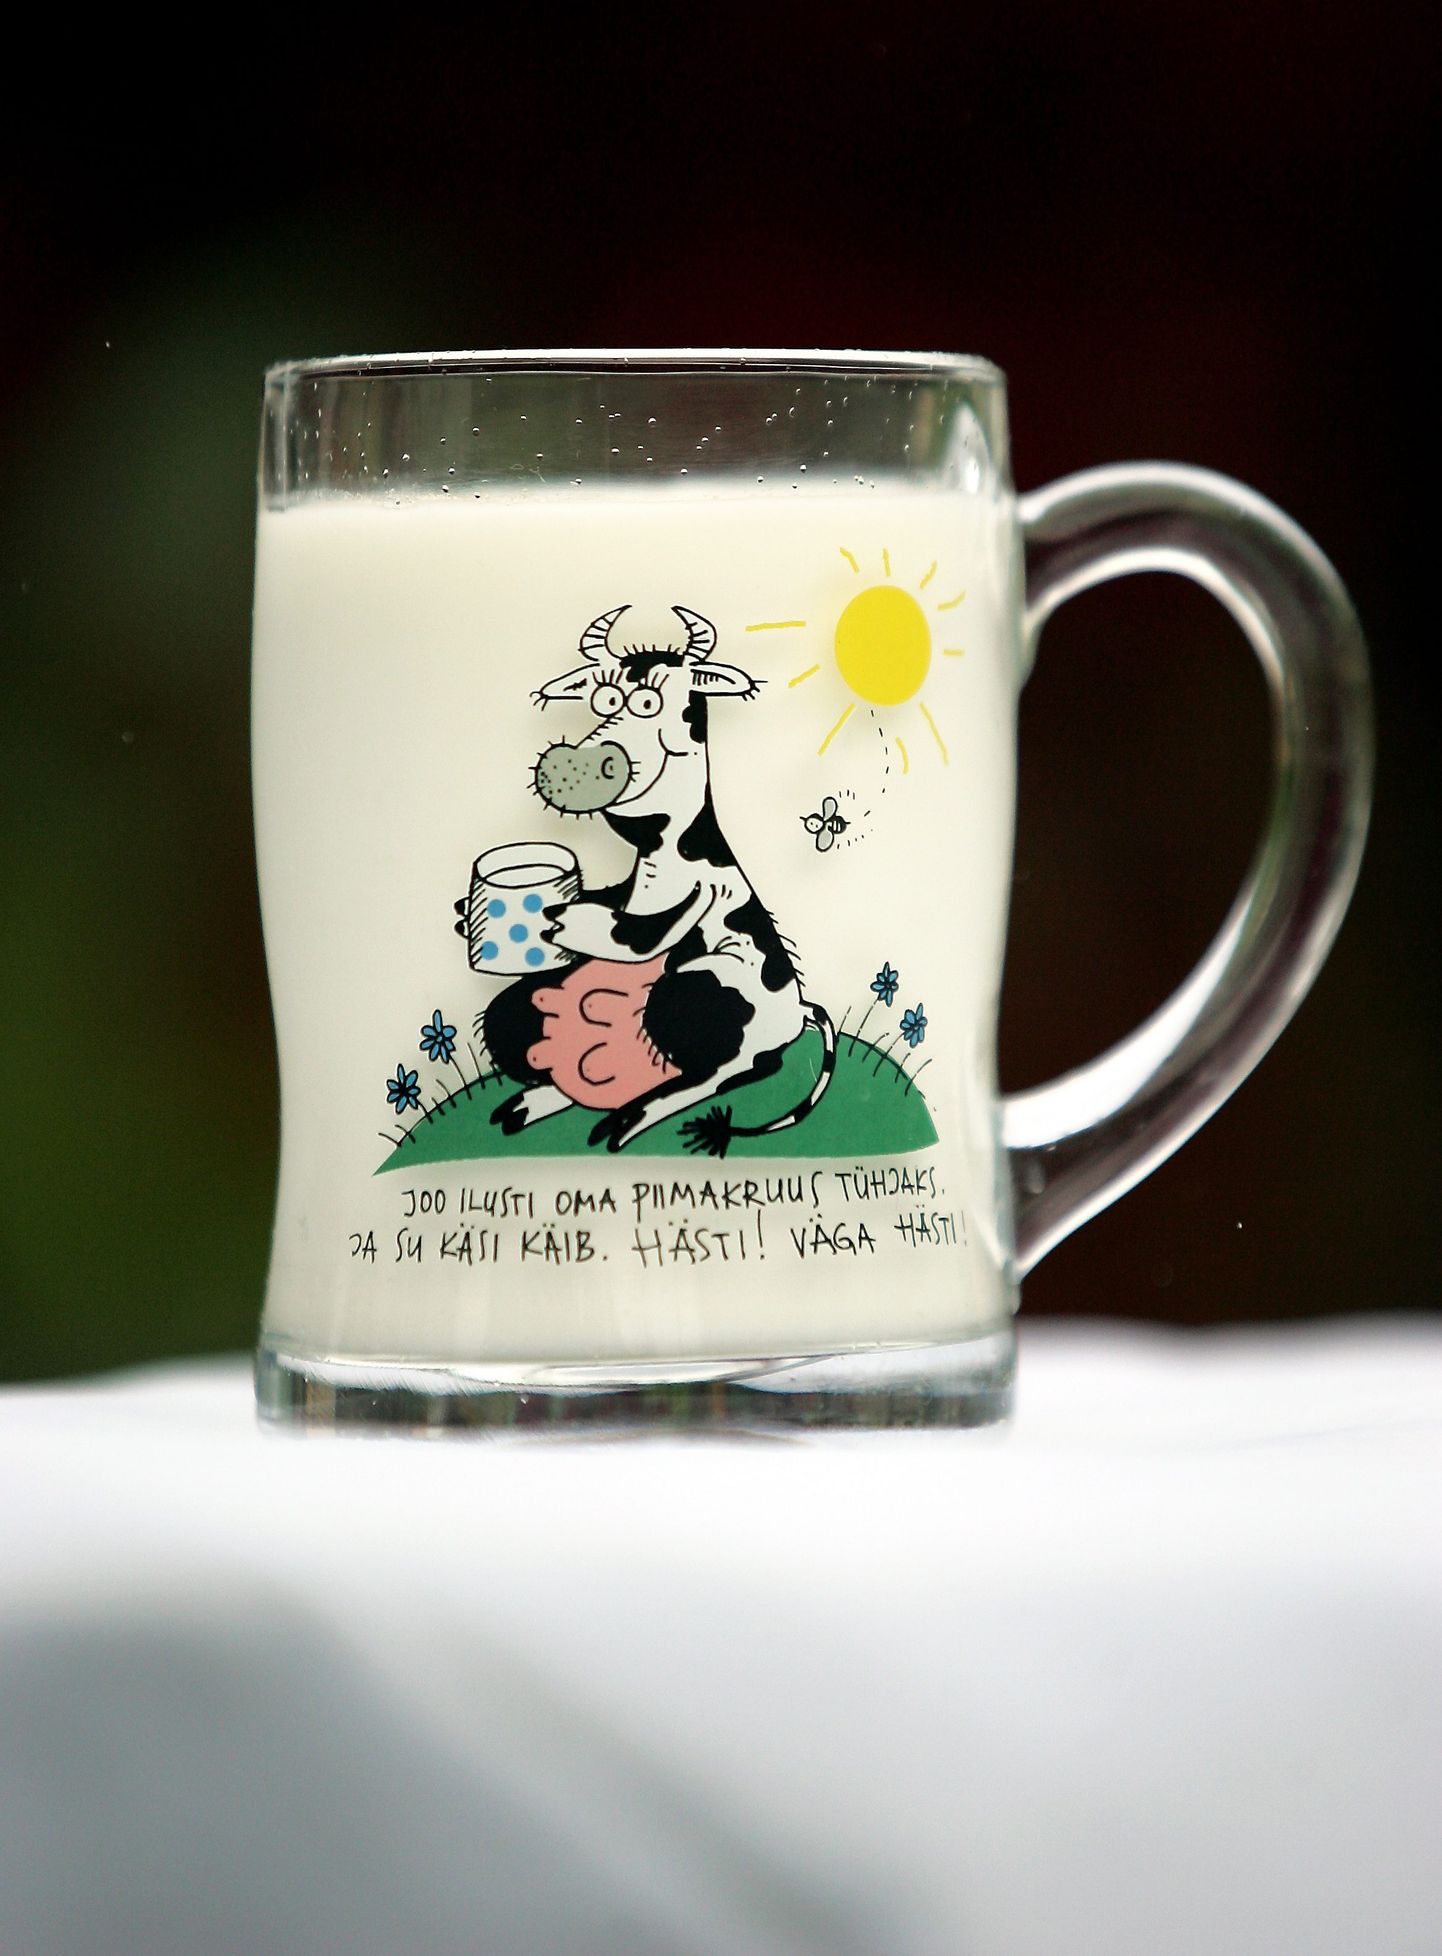 Piimatööstused tootsid mais 9100 tonni joogipiima.